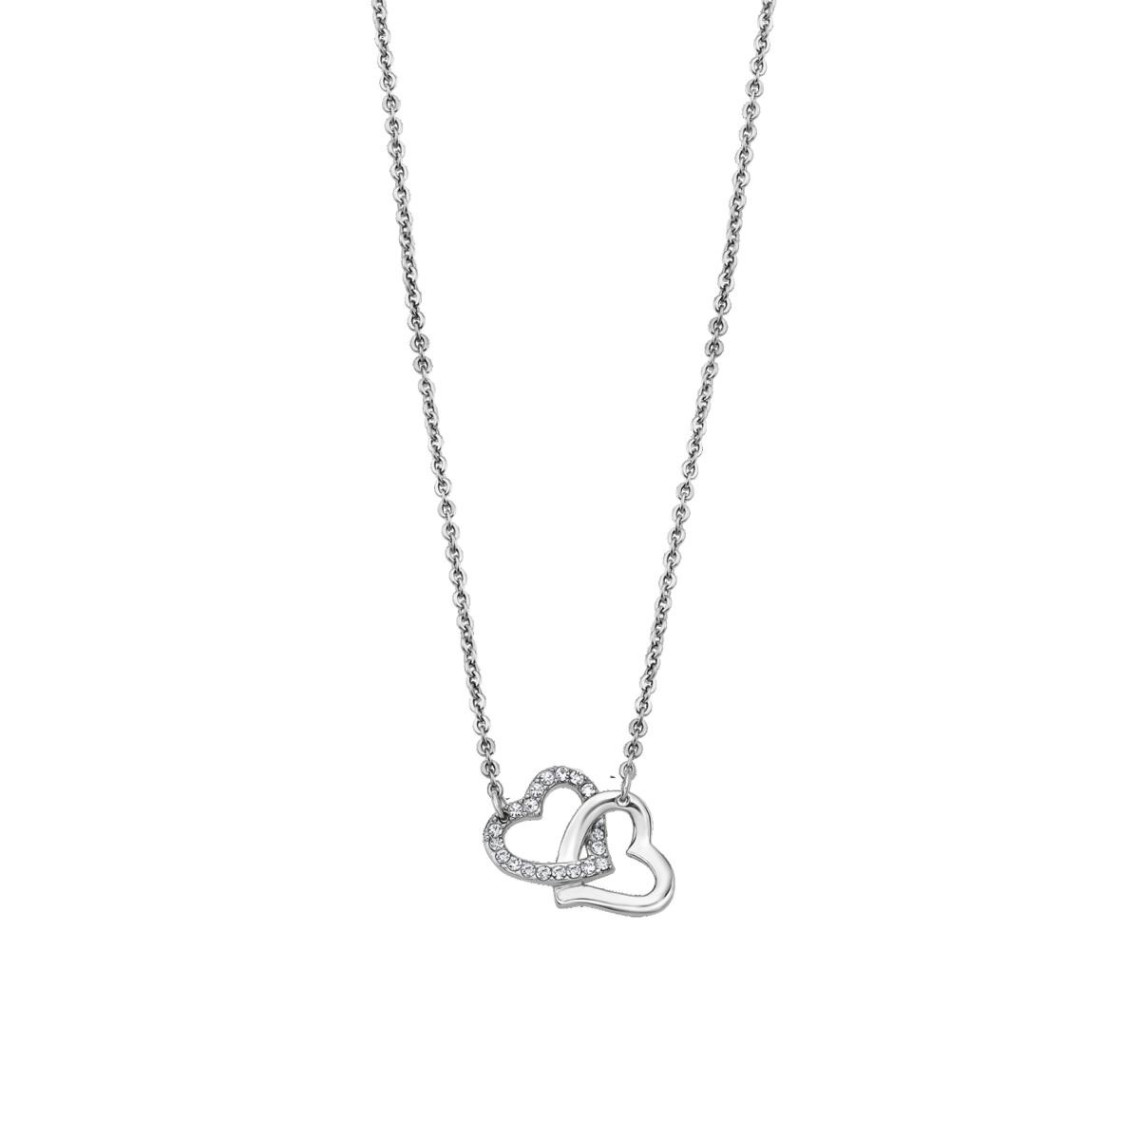 collier et pendentif lotus style bijoux woman's heart ls1912-1-1 - collier et pendentif woman's heart acier femme